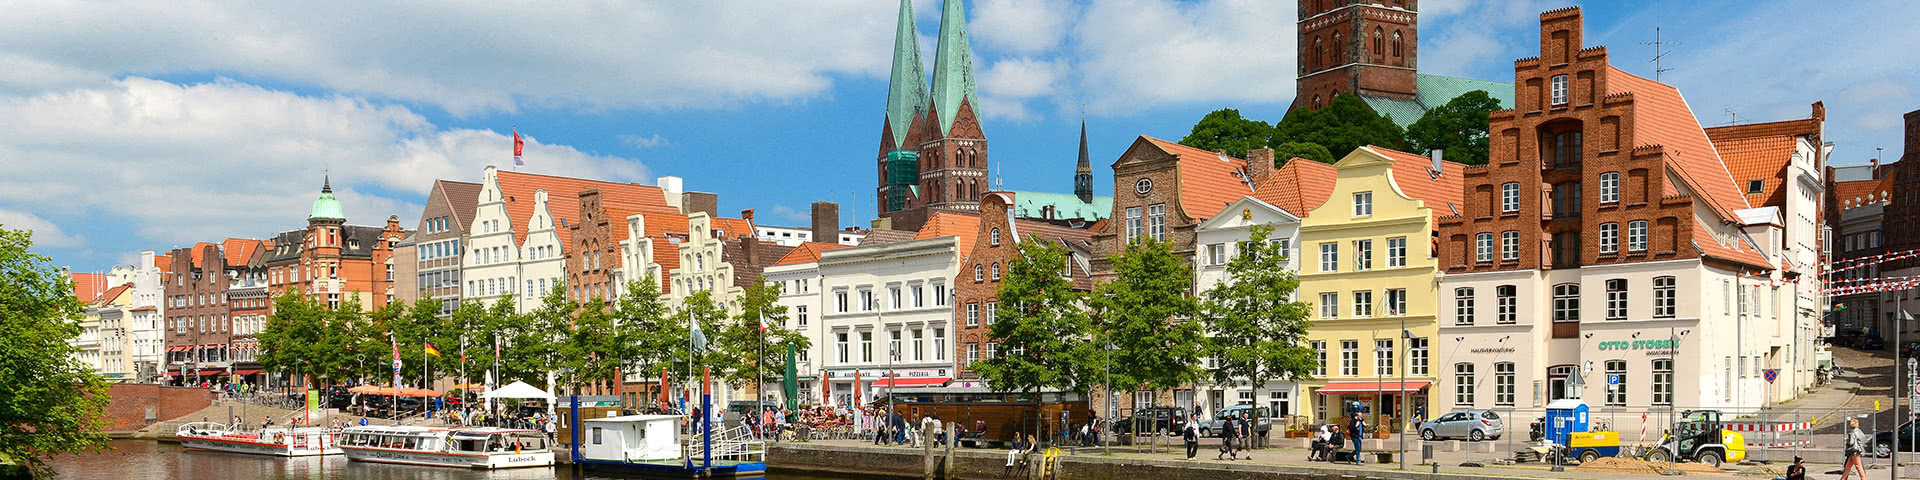 Blick auf die Altstadt von Lübeck